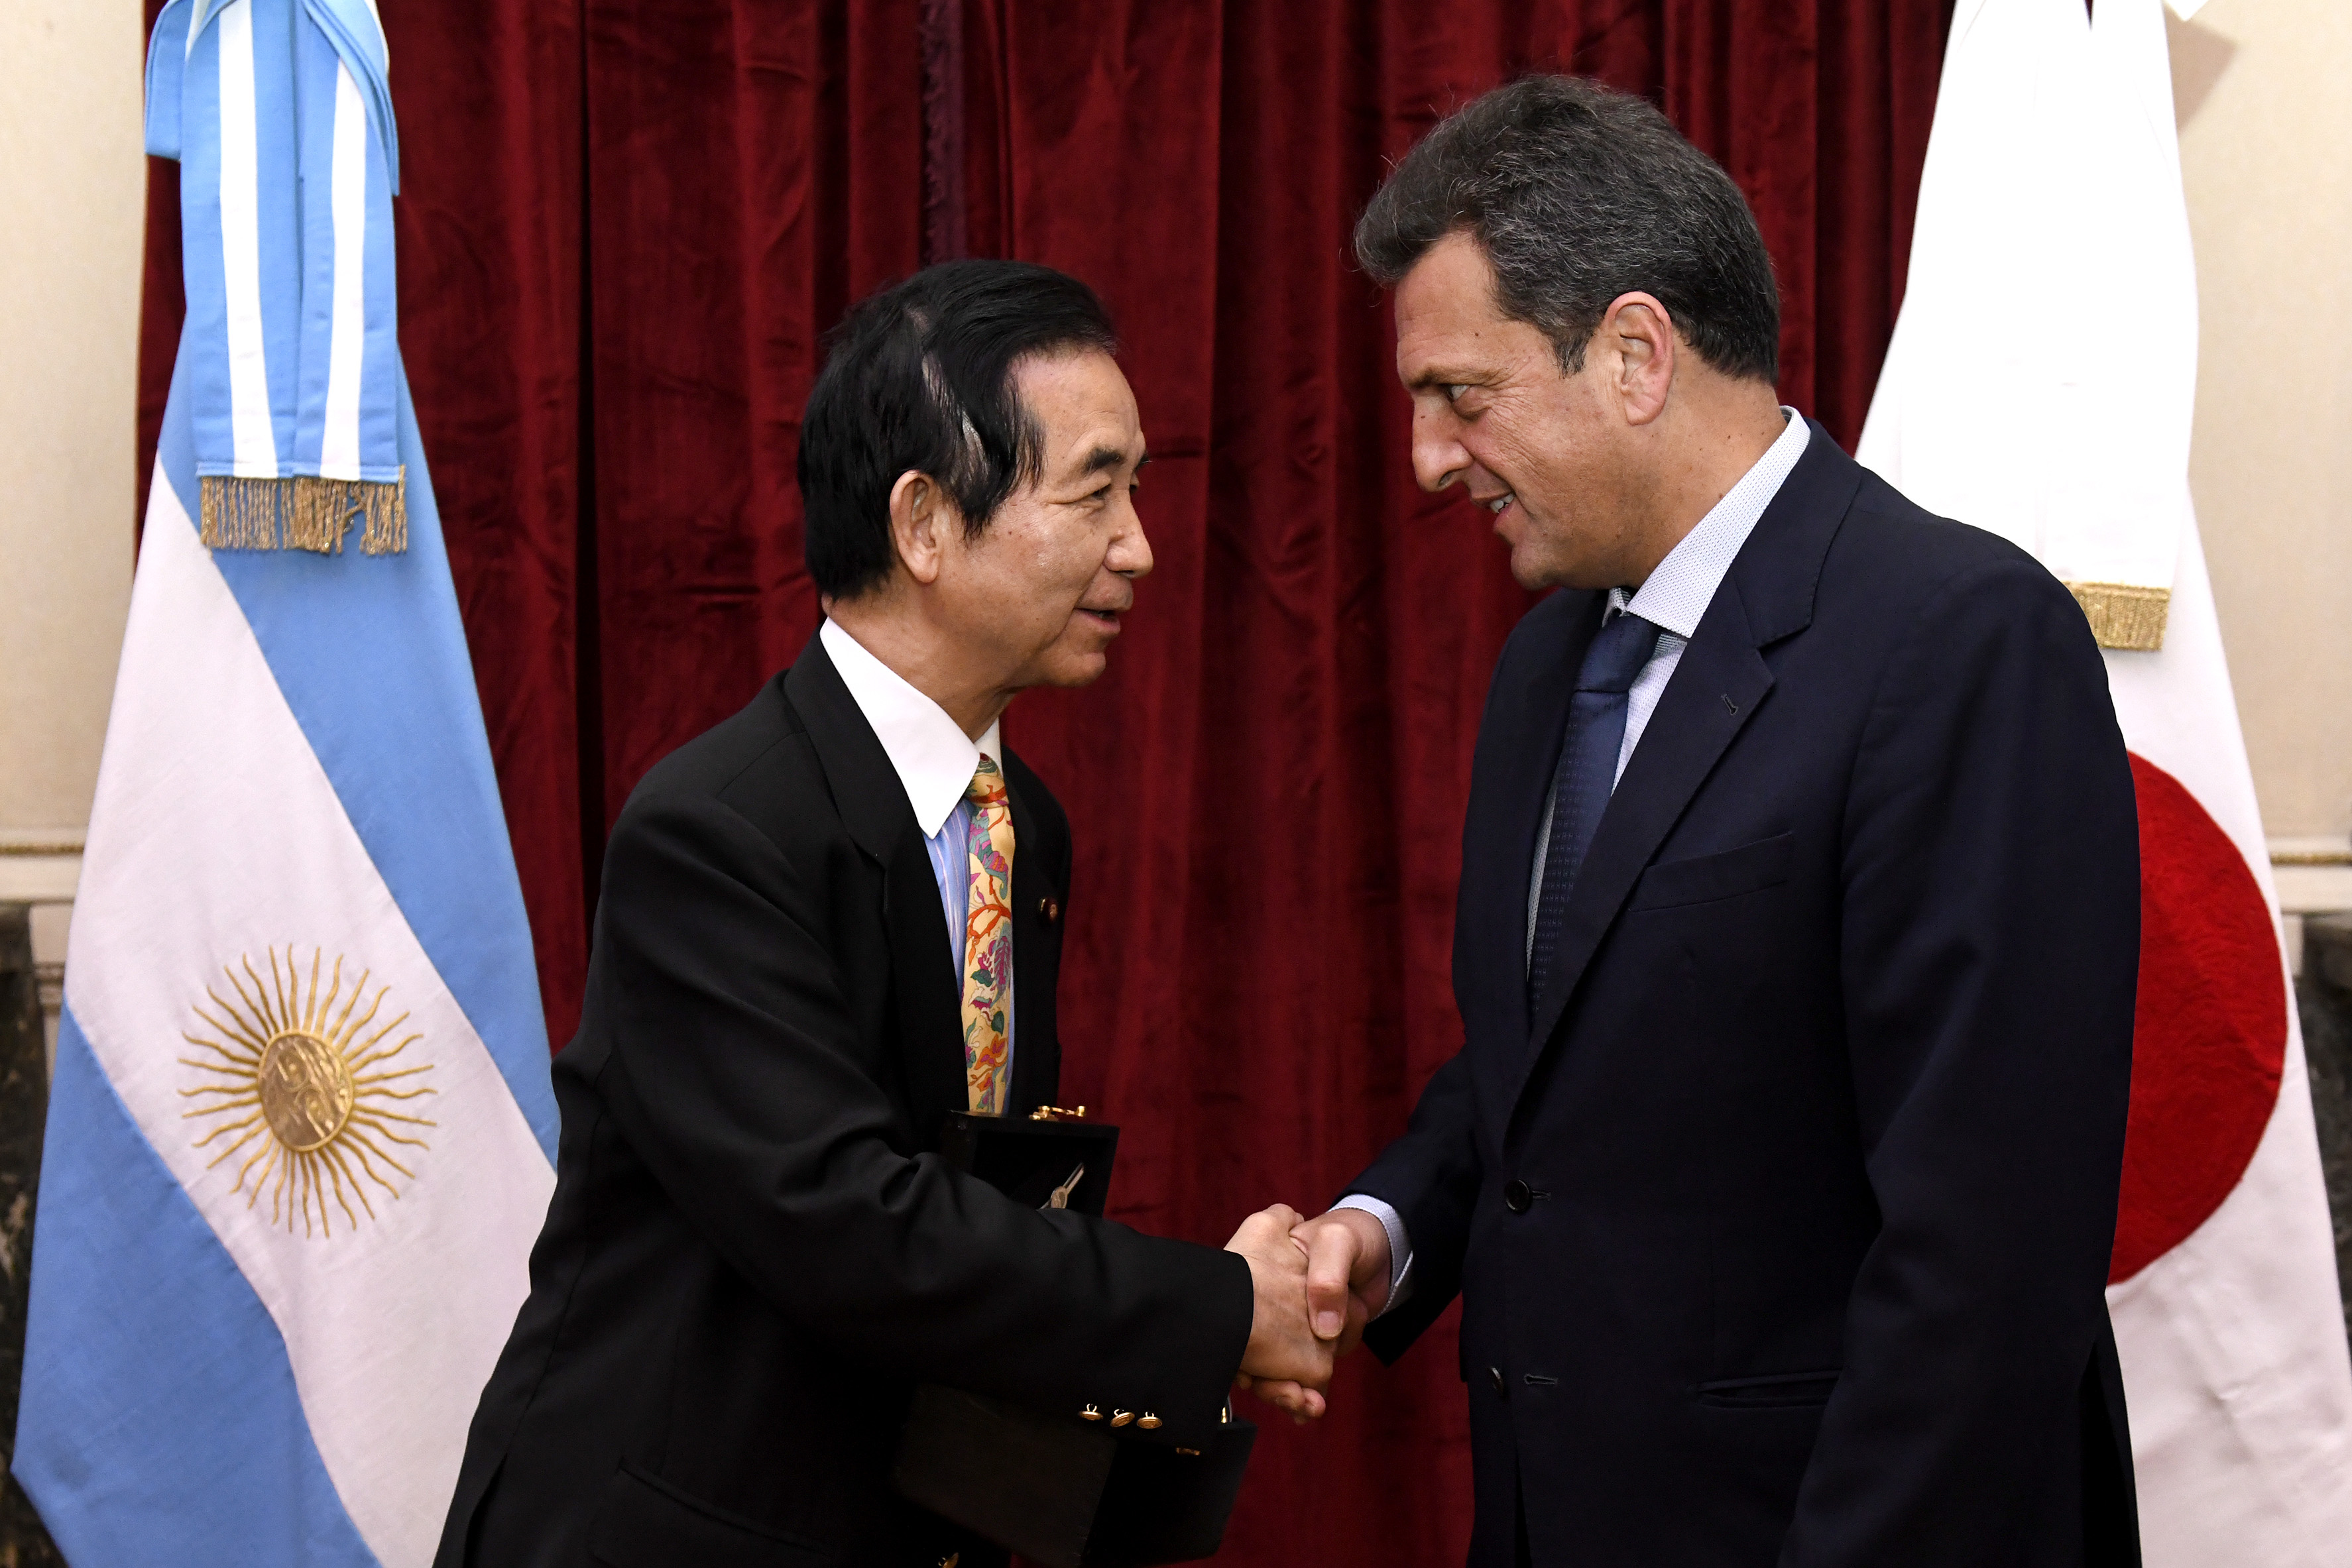 Una delegación de Japón visitó al Presidente de la HCDN, Sergio Massa para profundizar vínculos parlamentarios